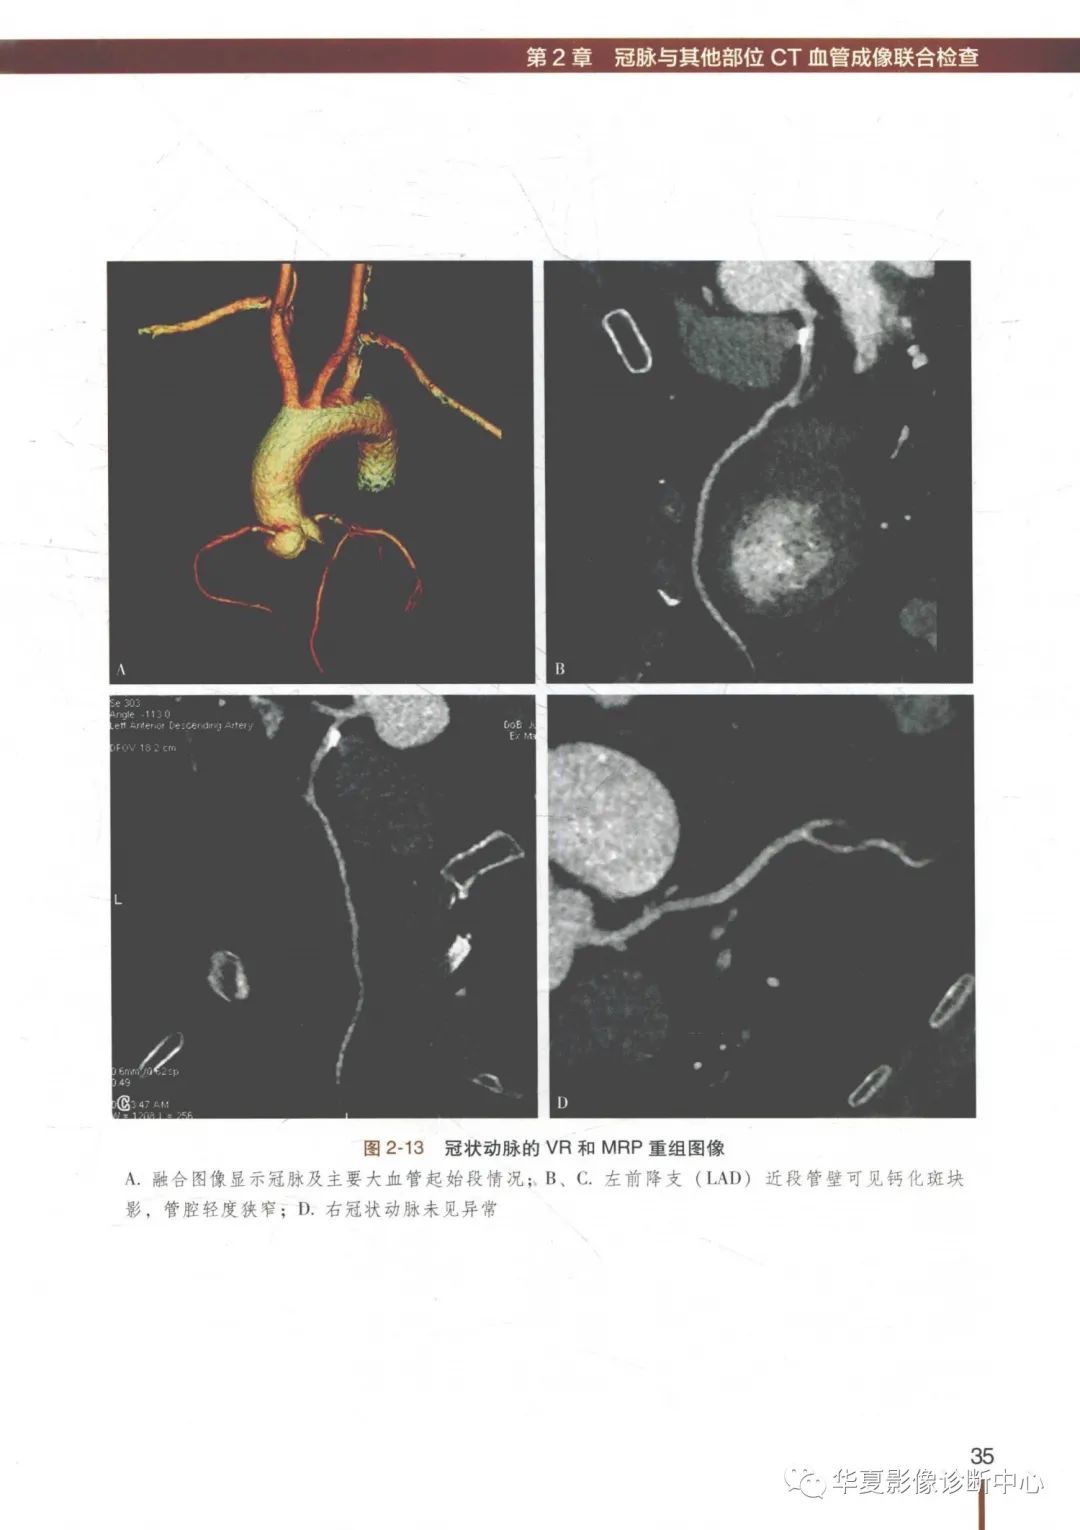 冠状动脉CT血管成像最新临床应用推荐及诊断规范